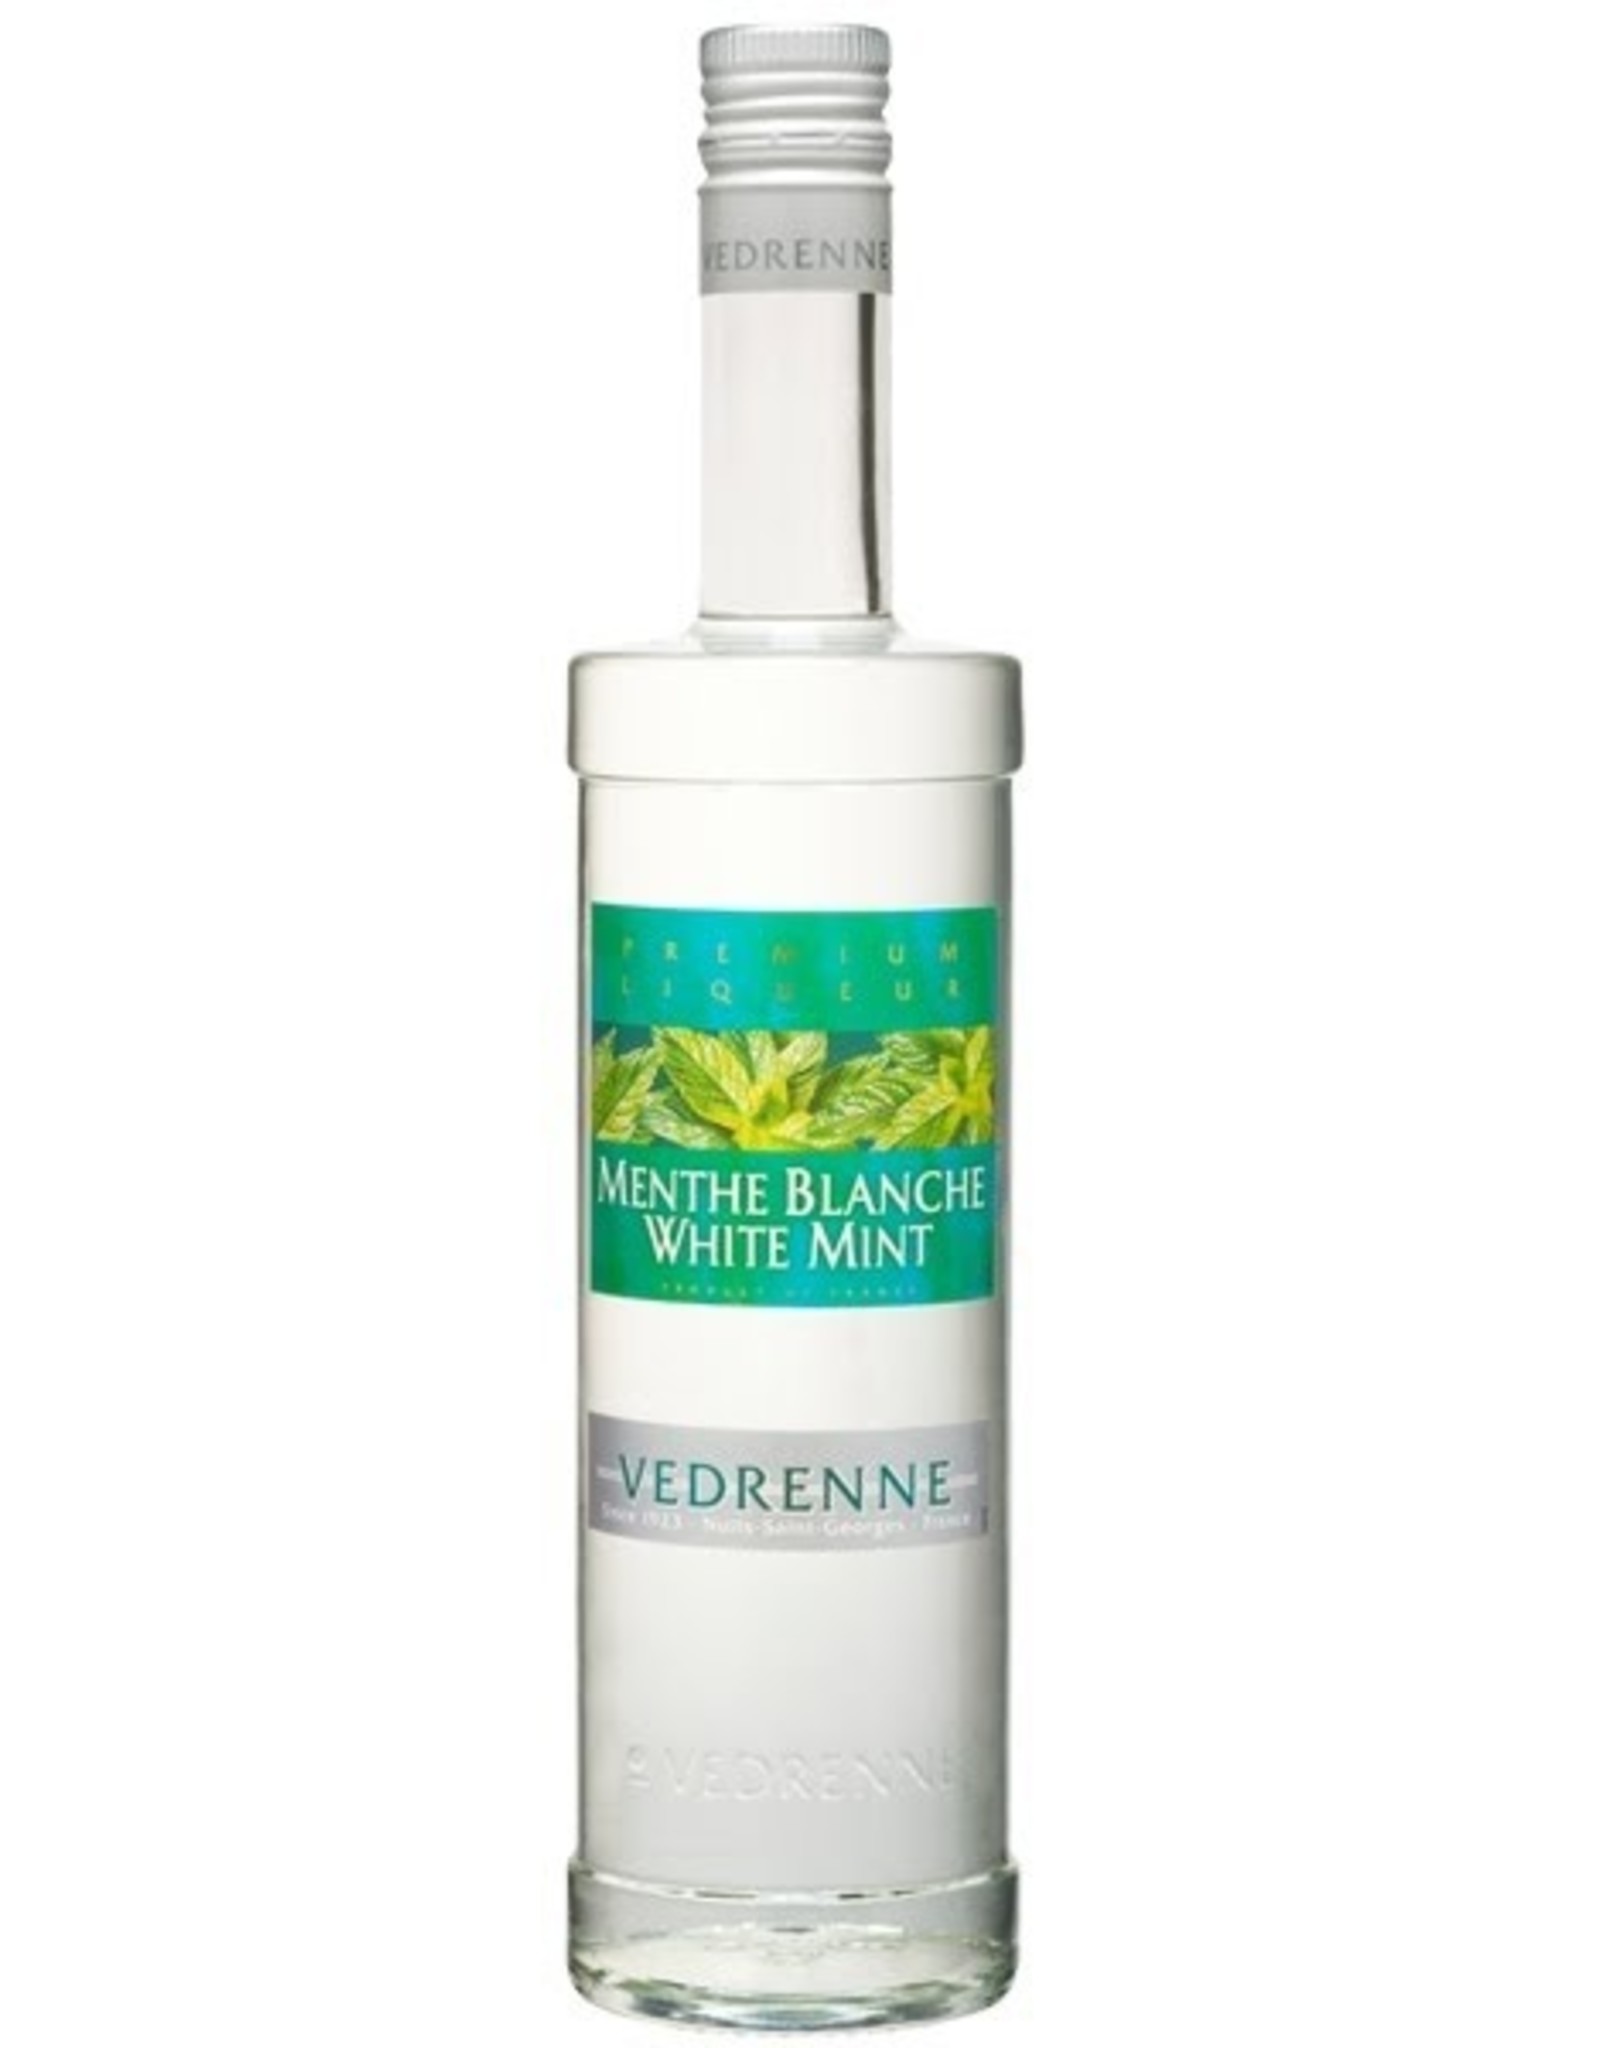 Vedrenne Creme de Menthe Blanche - White Mint Liqueur